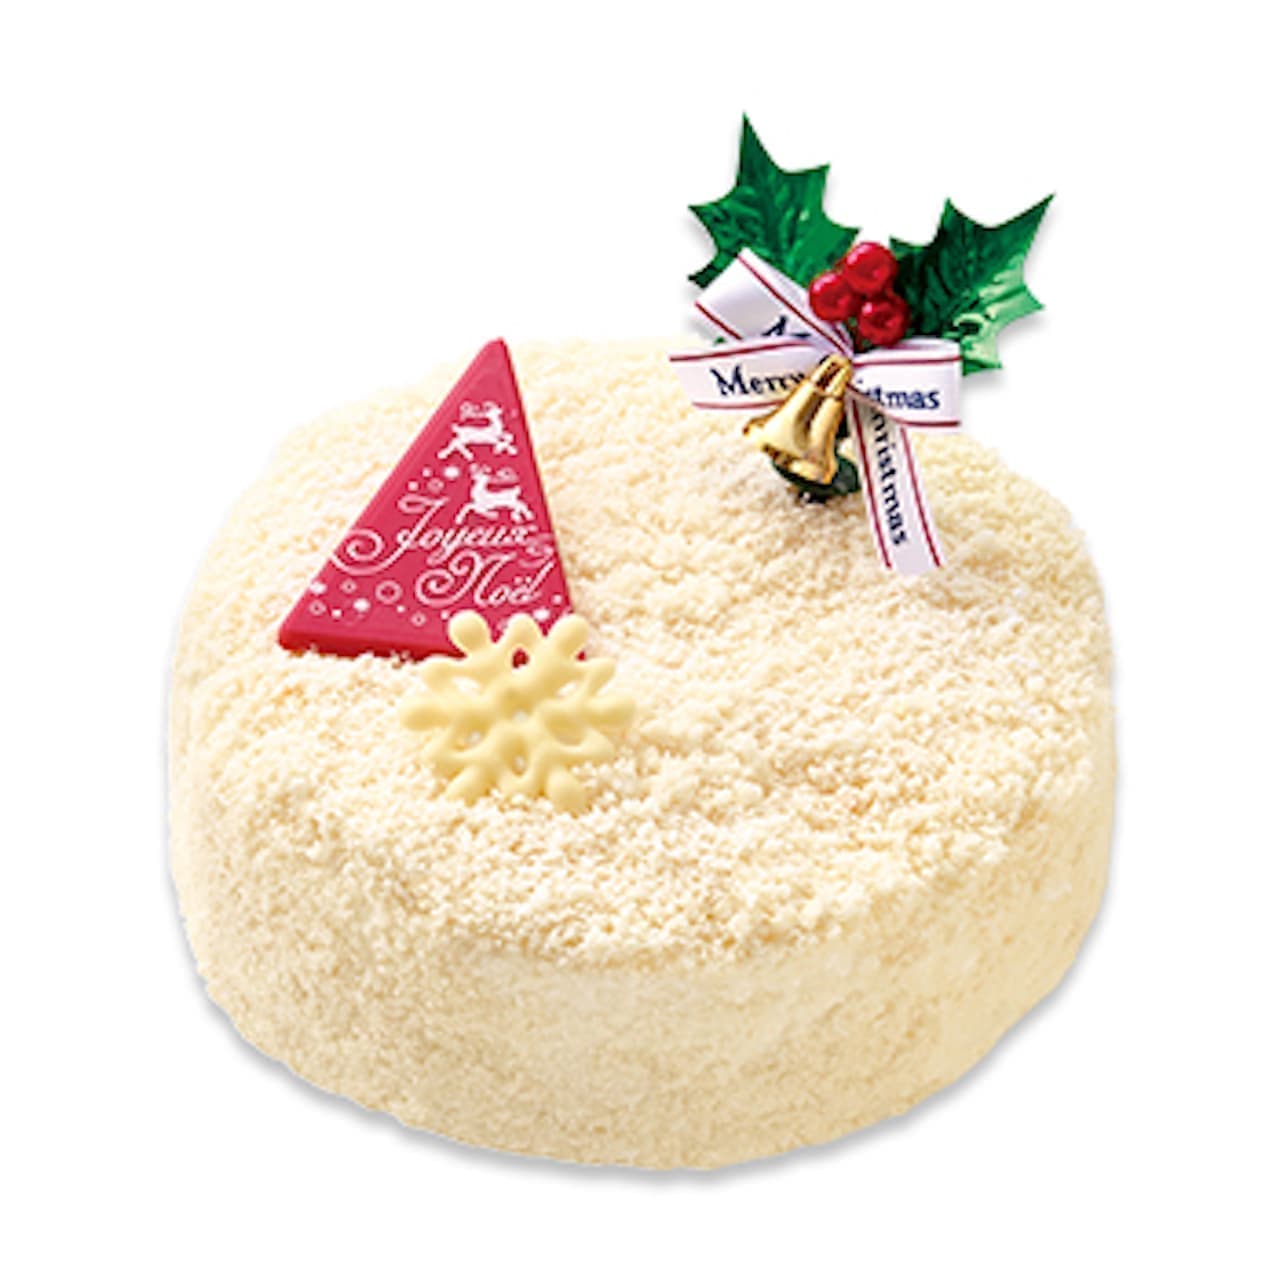 Fujiya "Christmas Snowfall Double Cheesecake